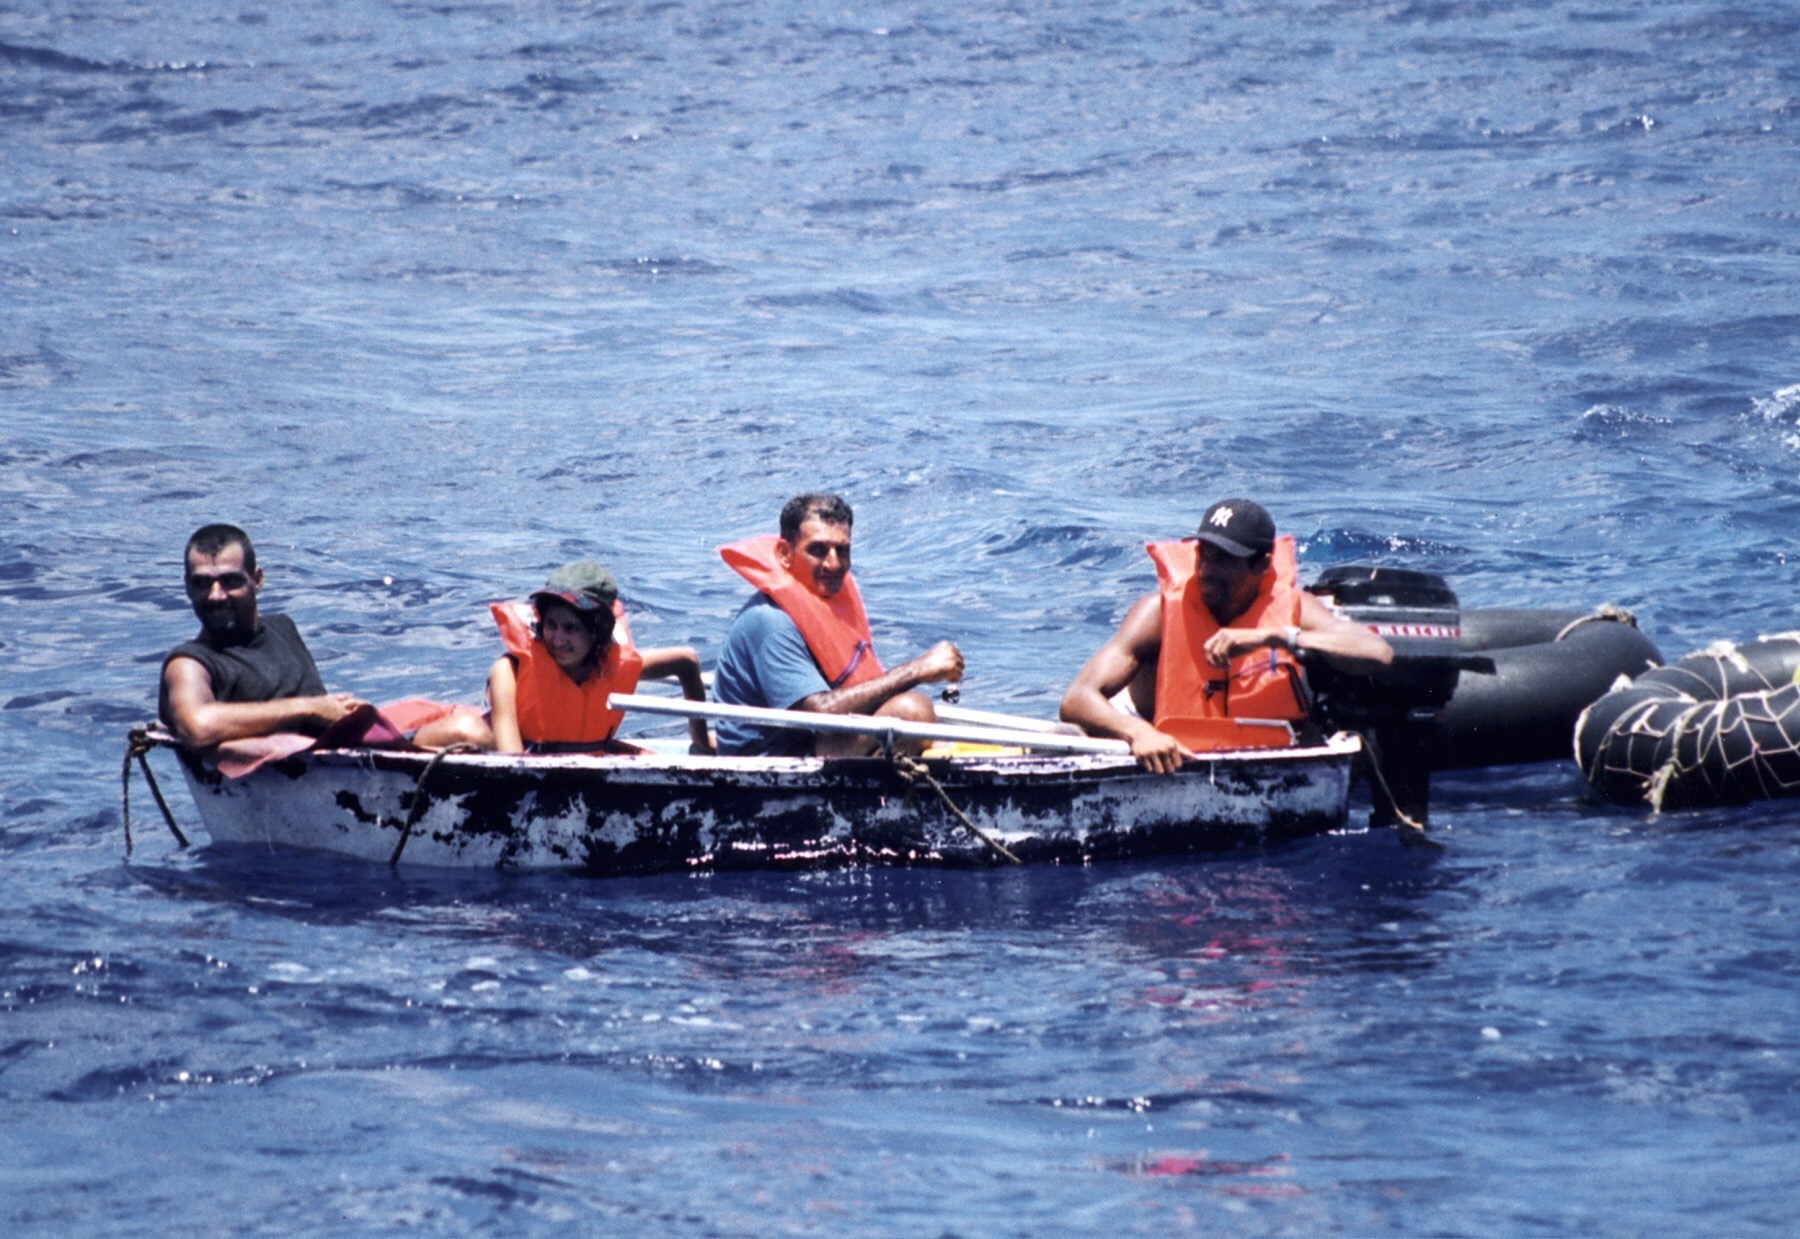 Foto de archivo de un grupo de inmigrantes cubanos llegando a las costas de Florida en un bote (EFE)
